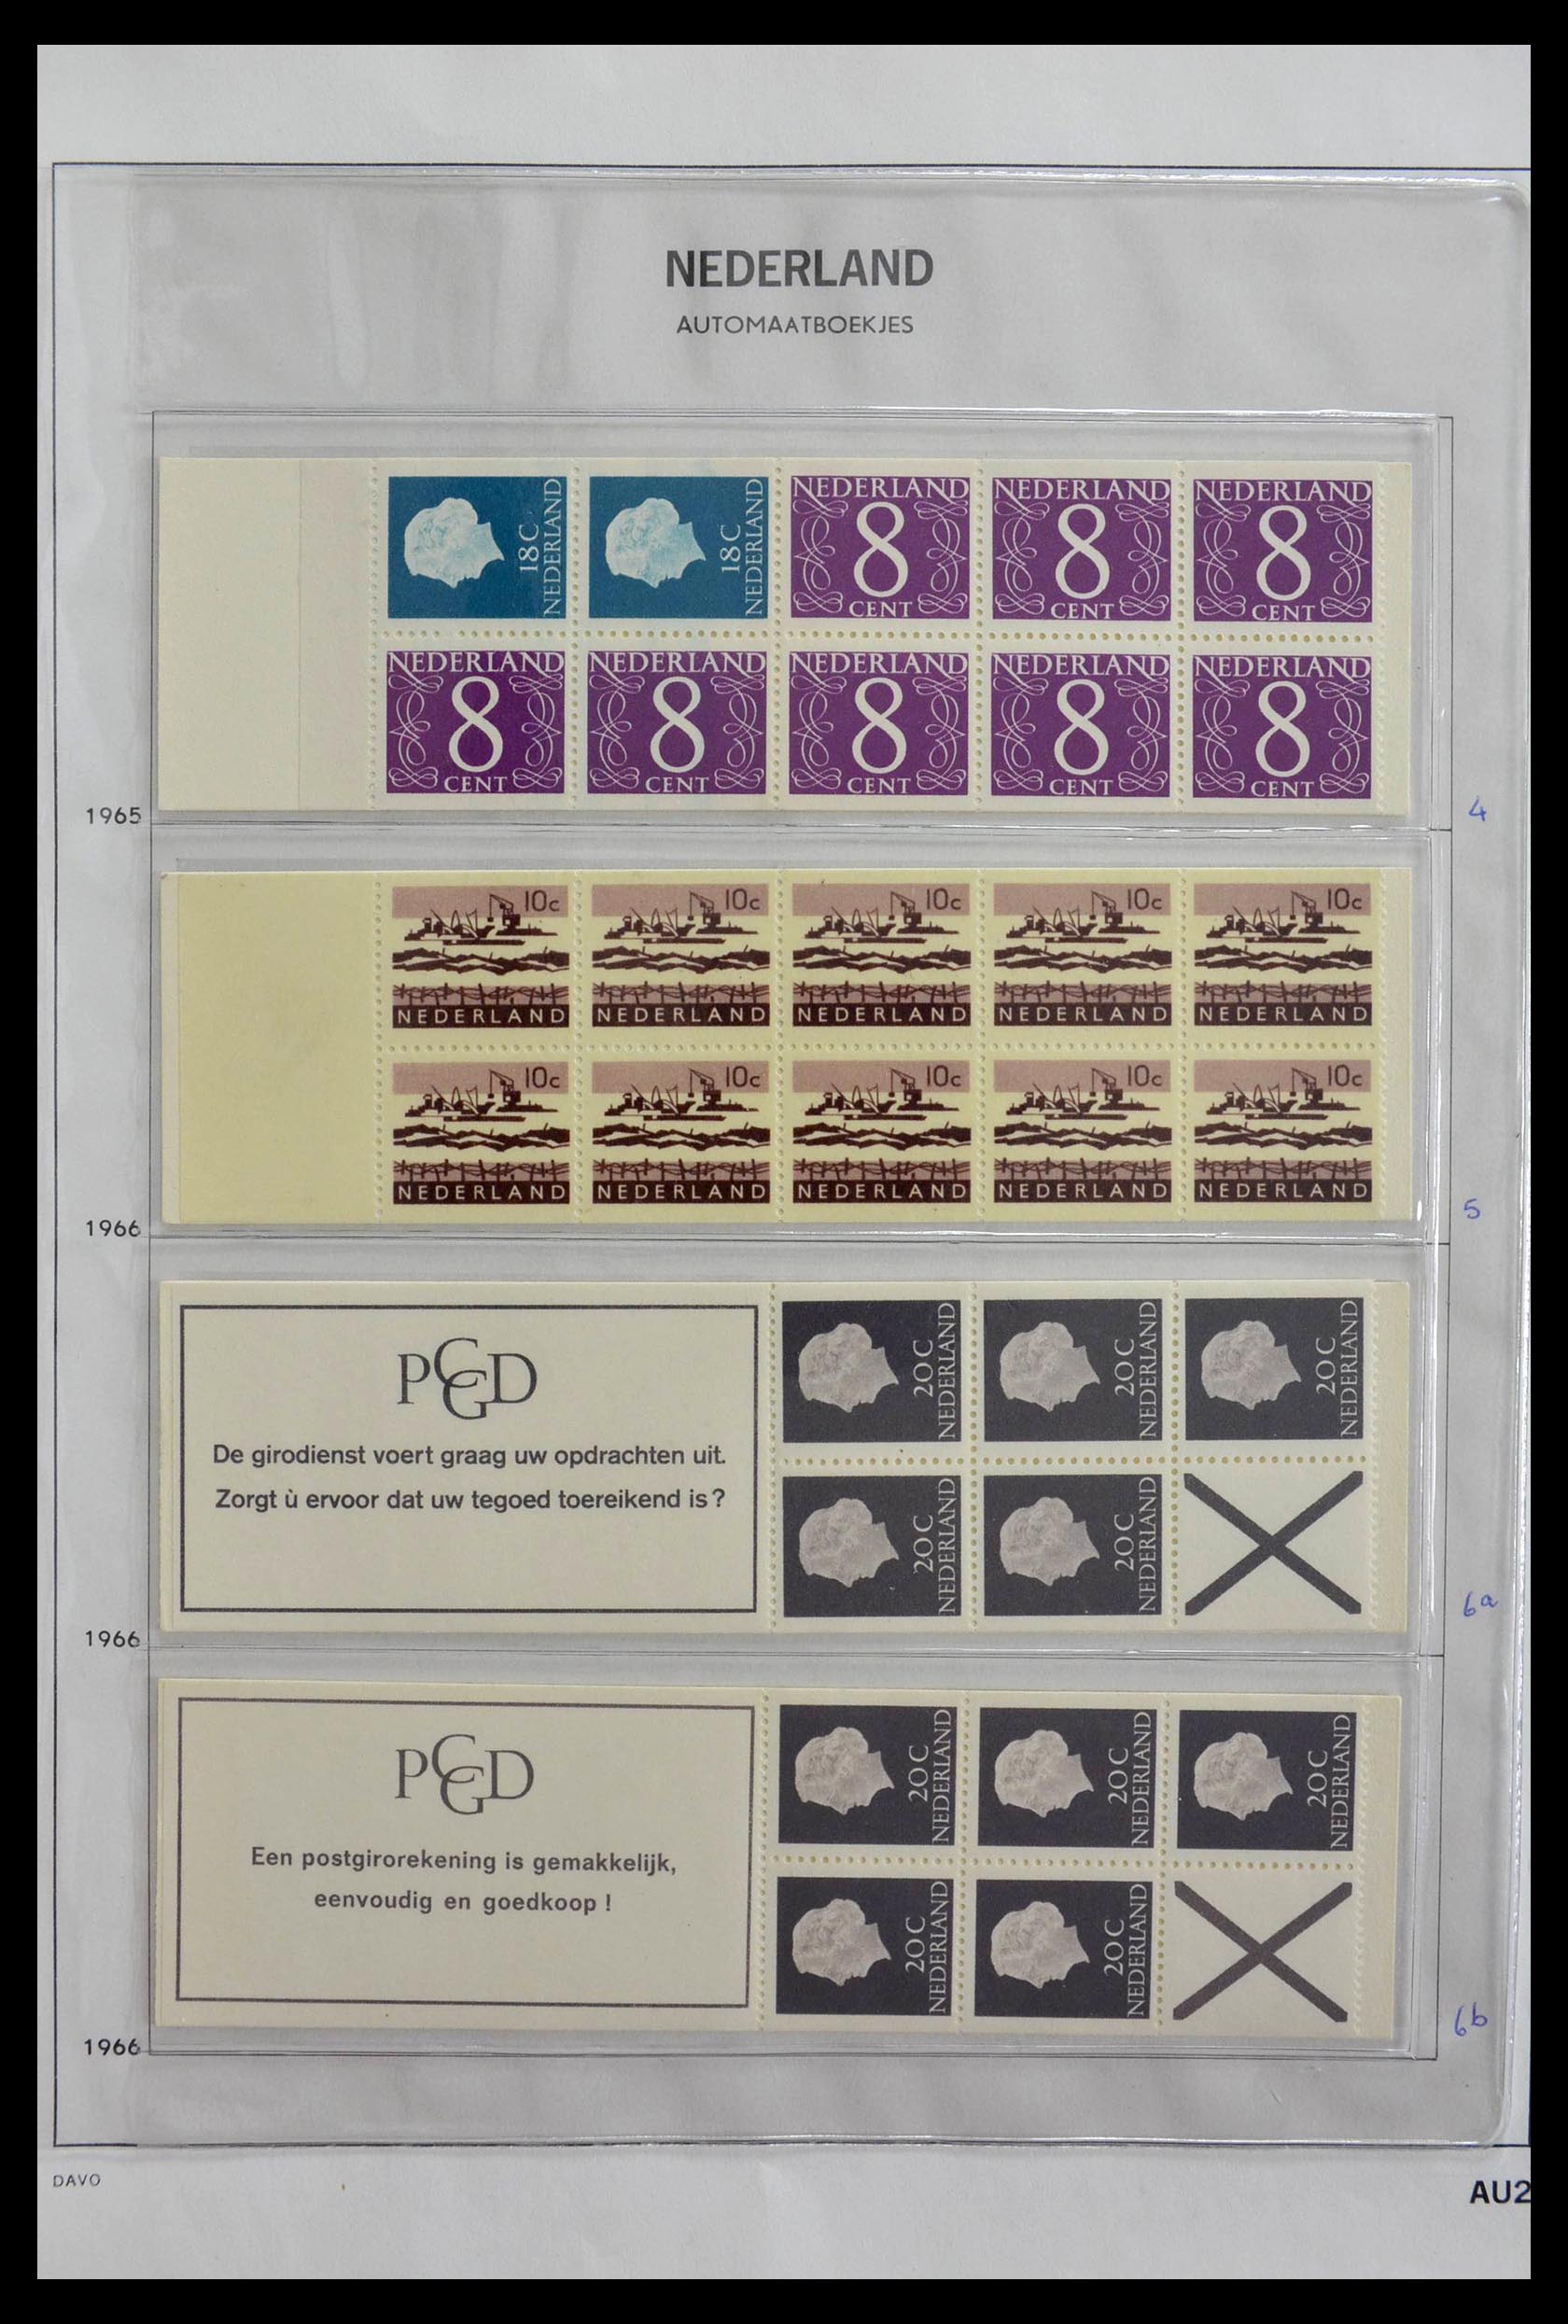 28853 002 - 28853 Netherlands stampbooklets 1964-2005.